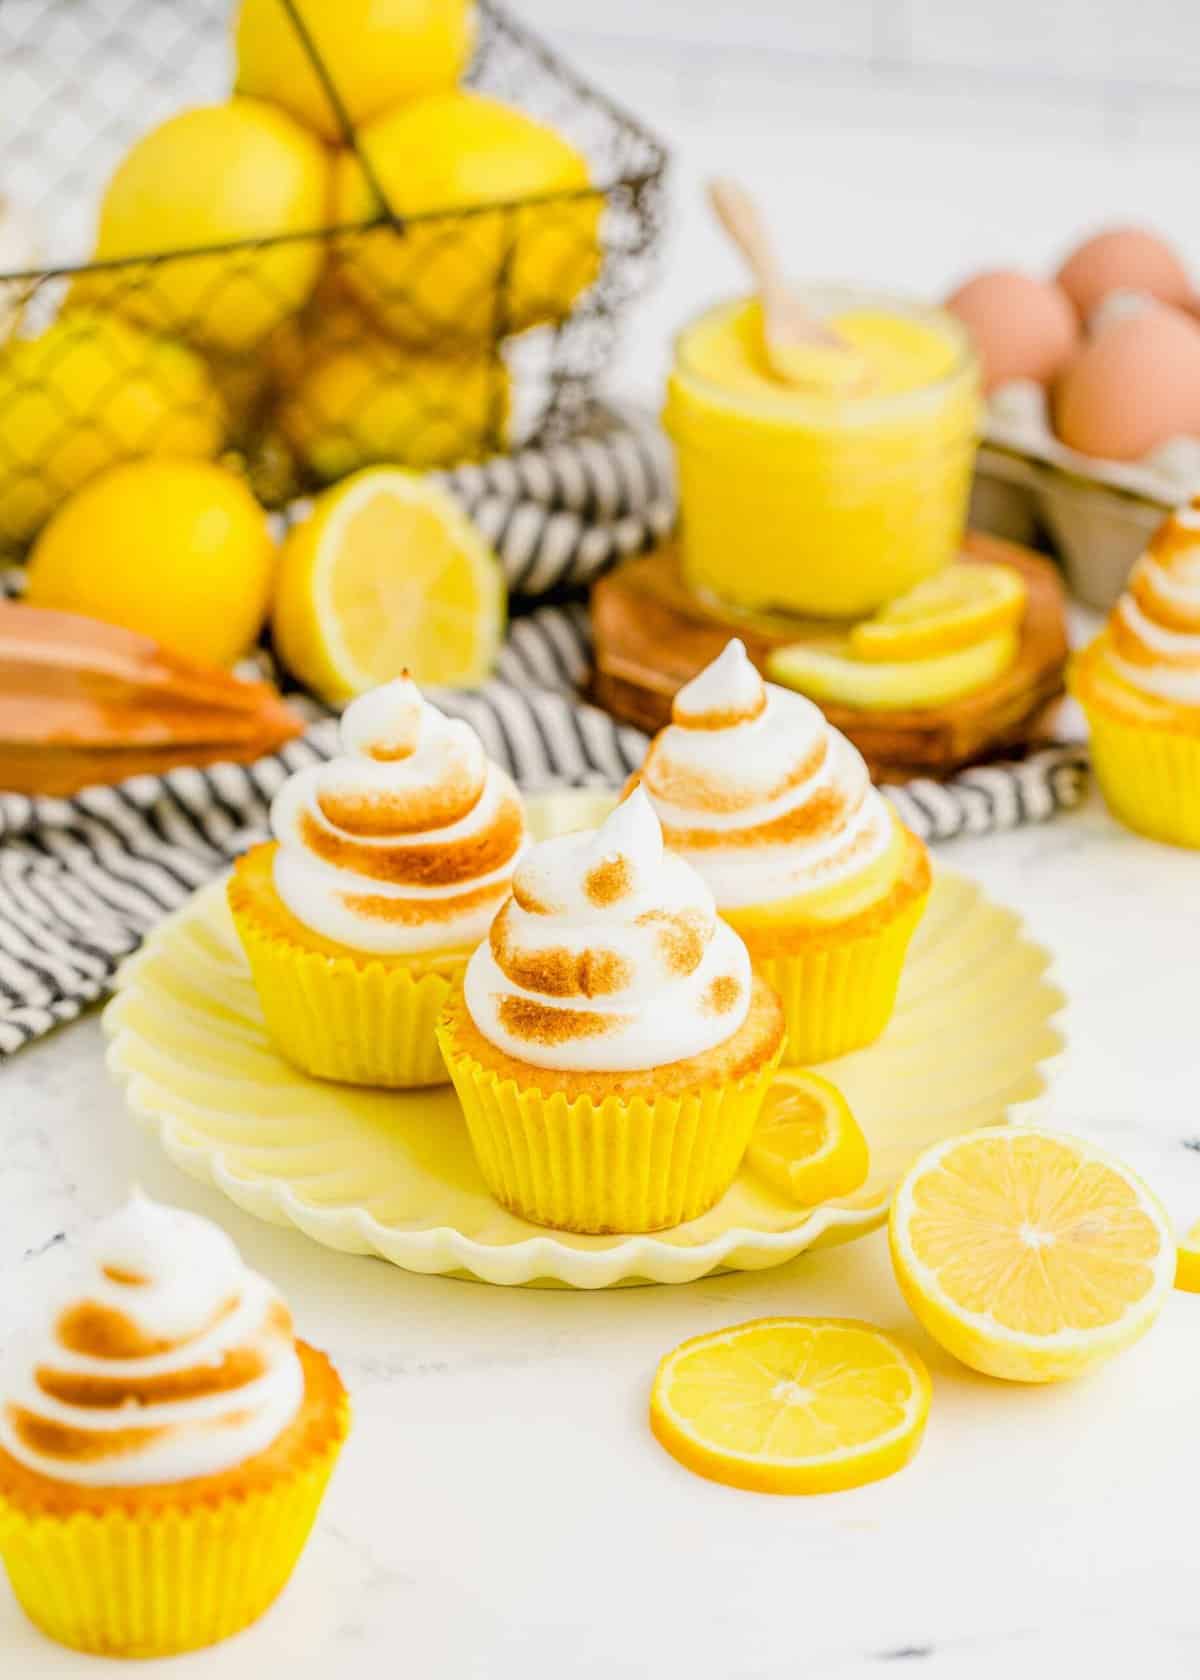 Plate of 3 lemon meringue cupcakes